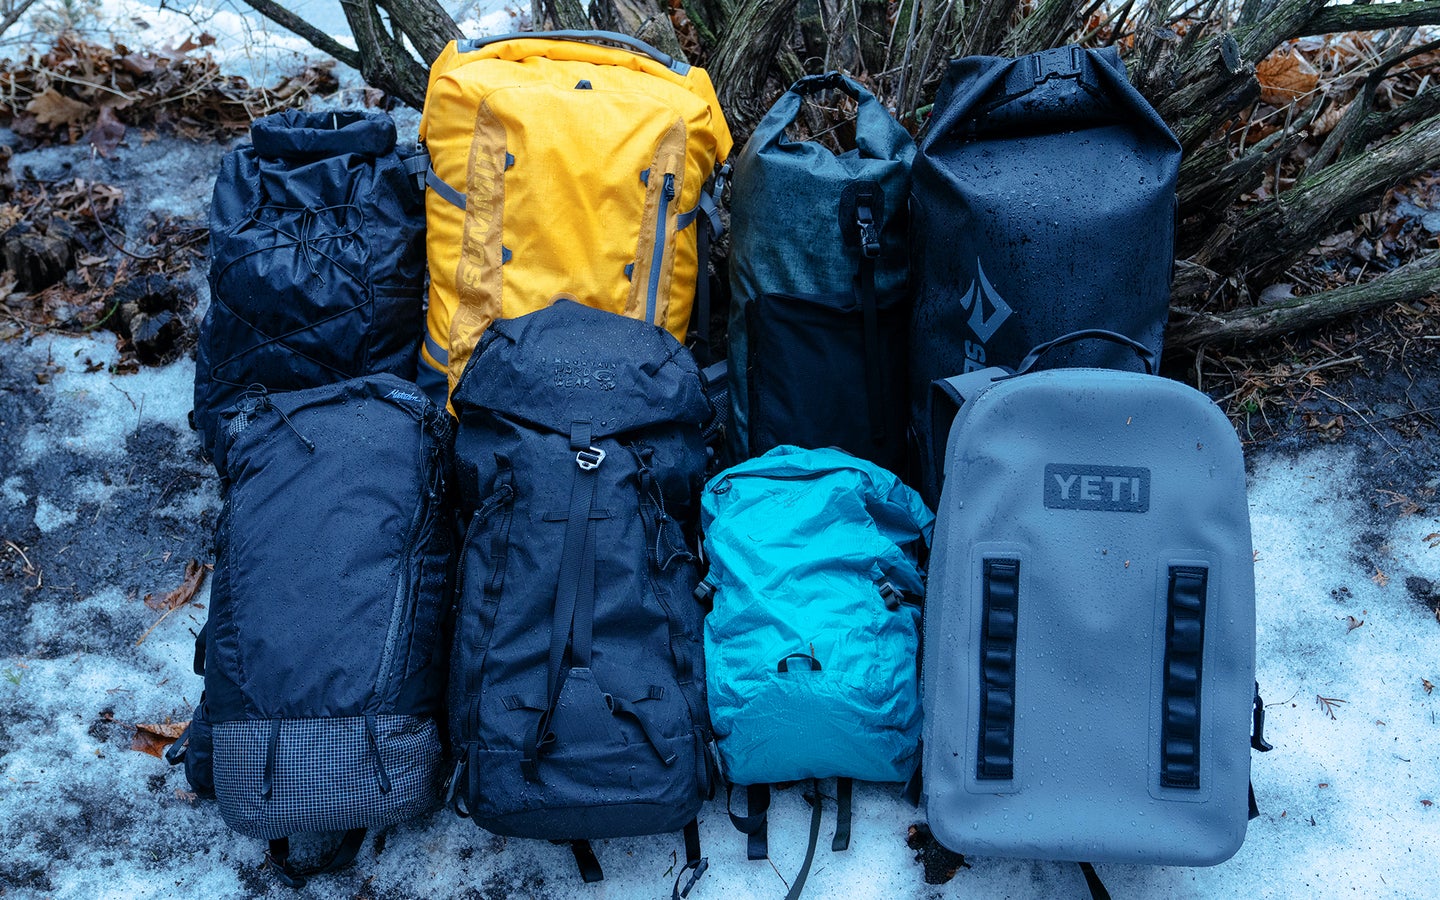 Best Waterproof Backpacks (Review & Buying Guide) in 2023 - Task & Purpose